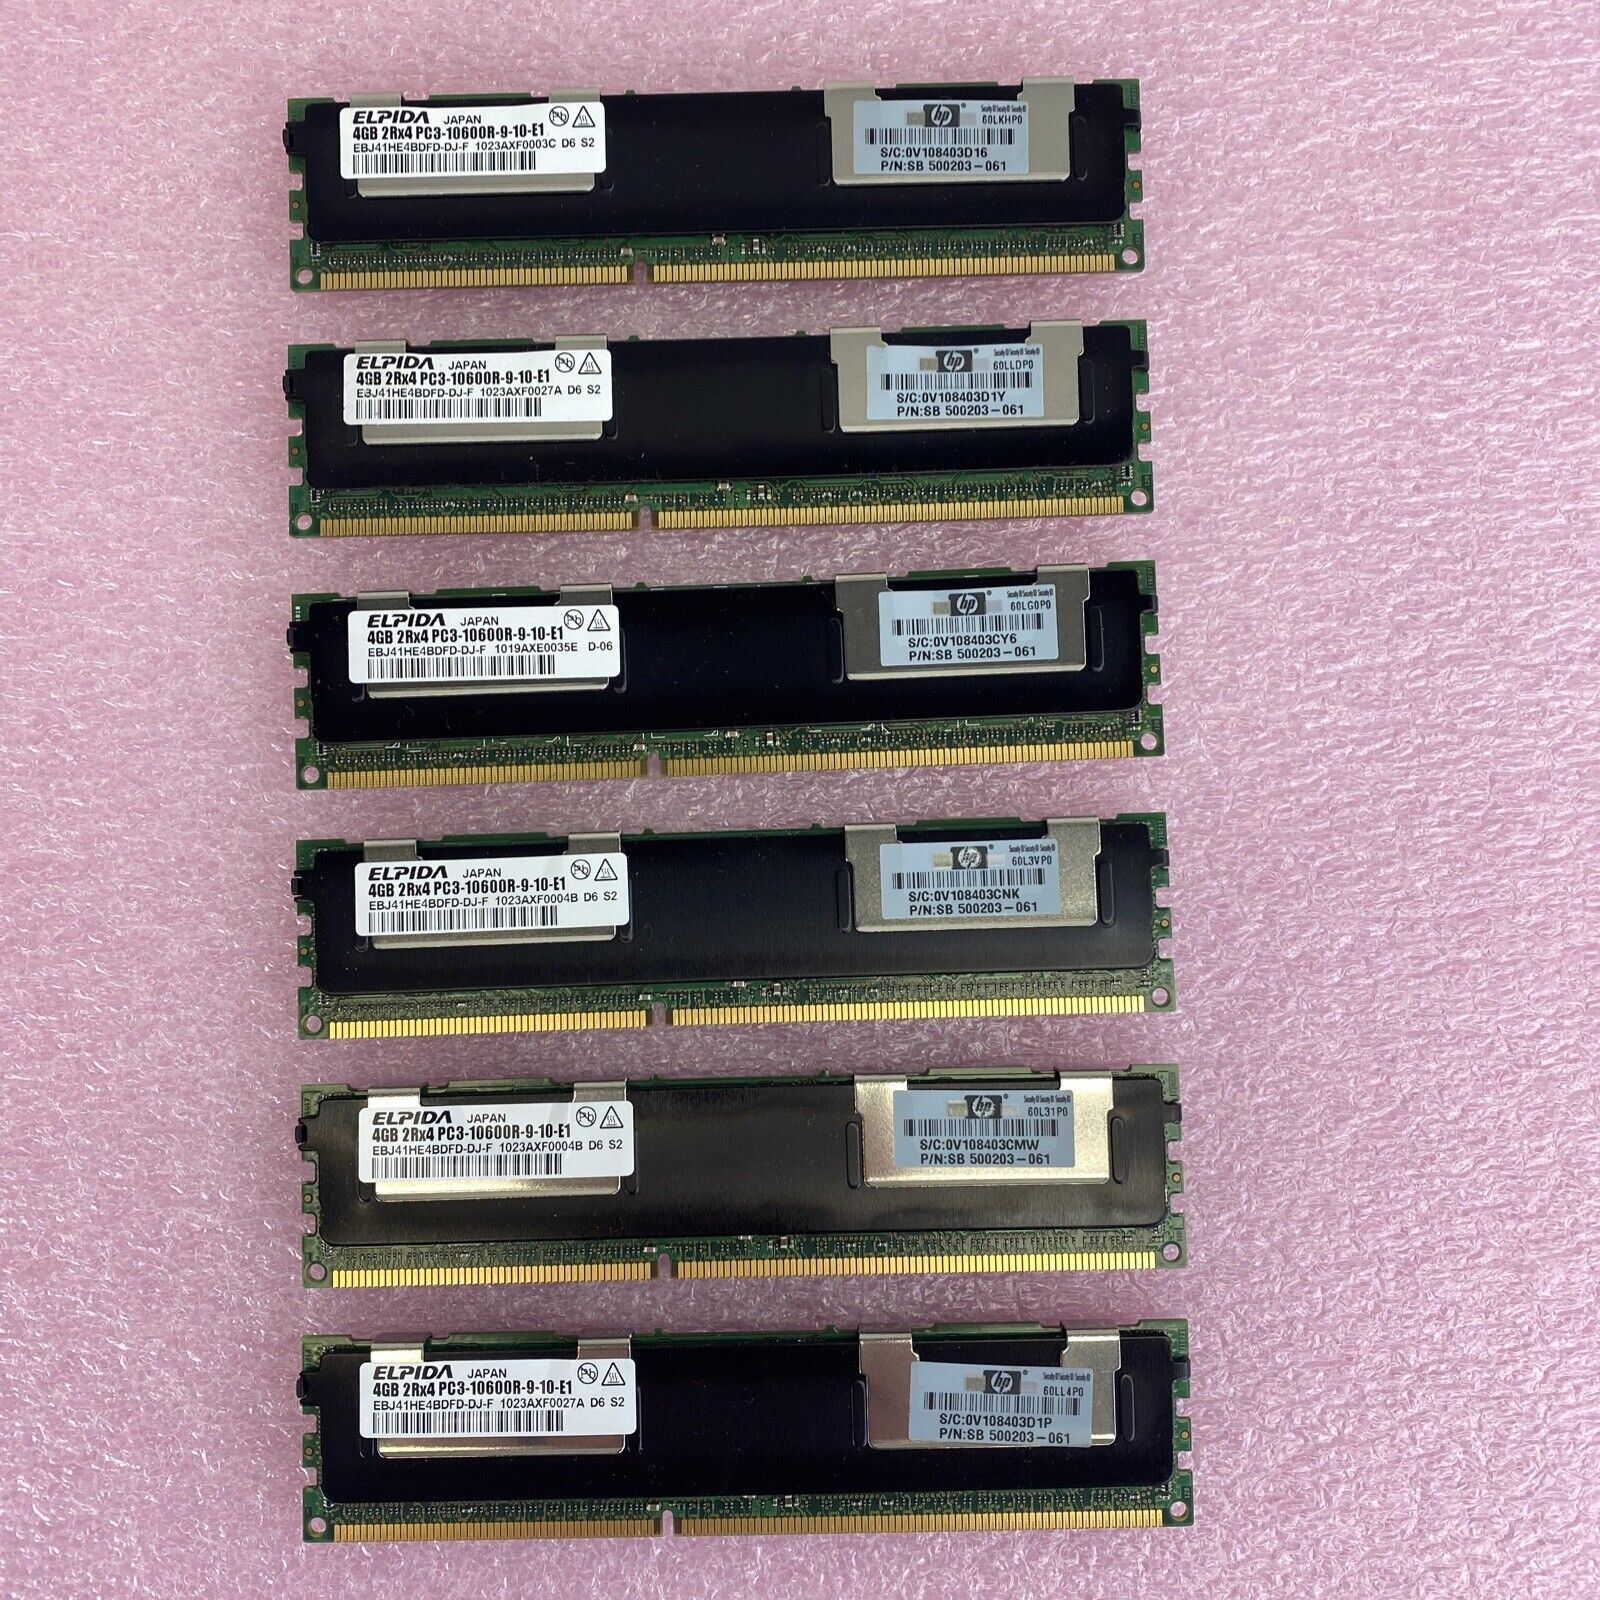 Lot 6x 4GB Elpida EBJ41HE4BDFD-DJ-F 2Rx4 PC3-106000R server RAM memory